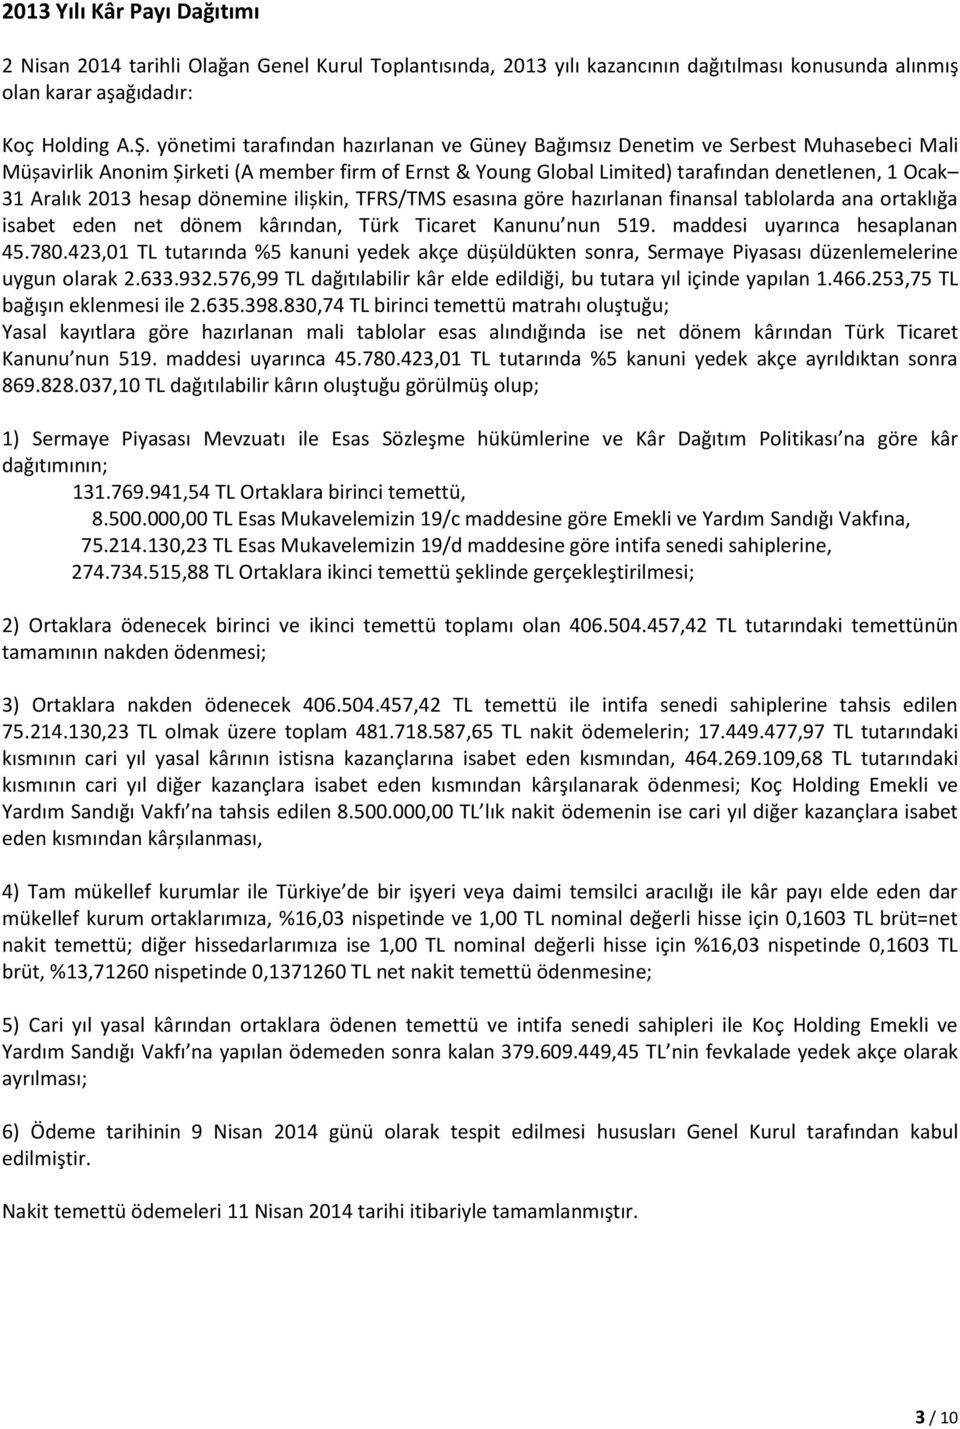 2013 hesap dönemine ilișkin, TFRS/TMS esasına göre hazırlanan finansal tablolarda ana ortaklığa isabet eden net dönem kârından, Türk Ticaret Kanunu nun 519. maddesi uyarınca hesaplanan 45.780.